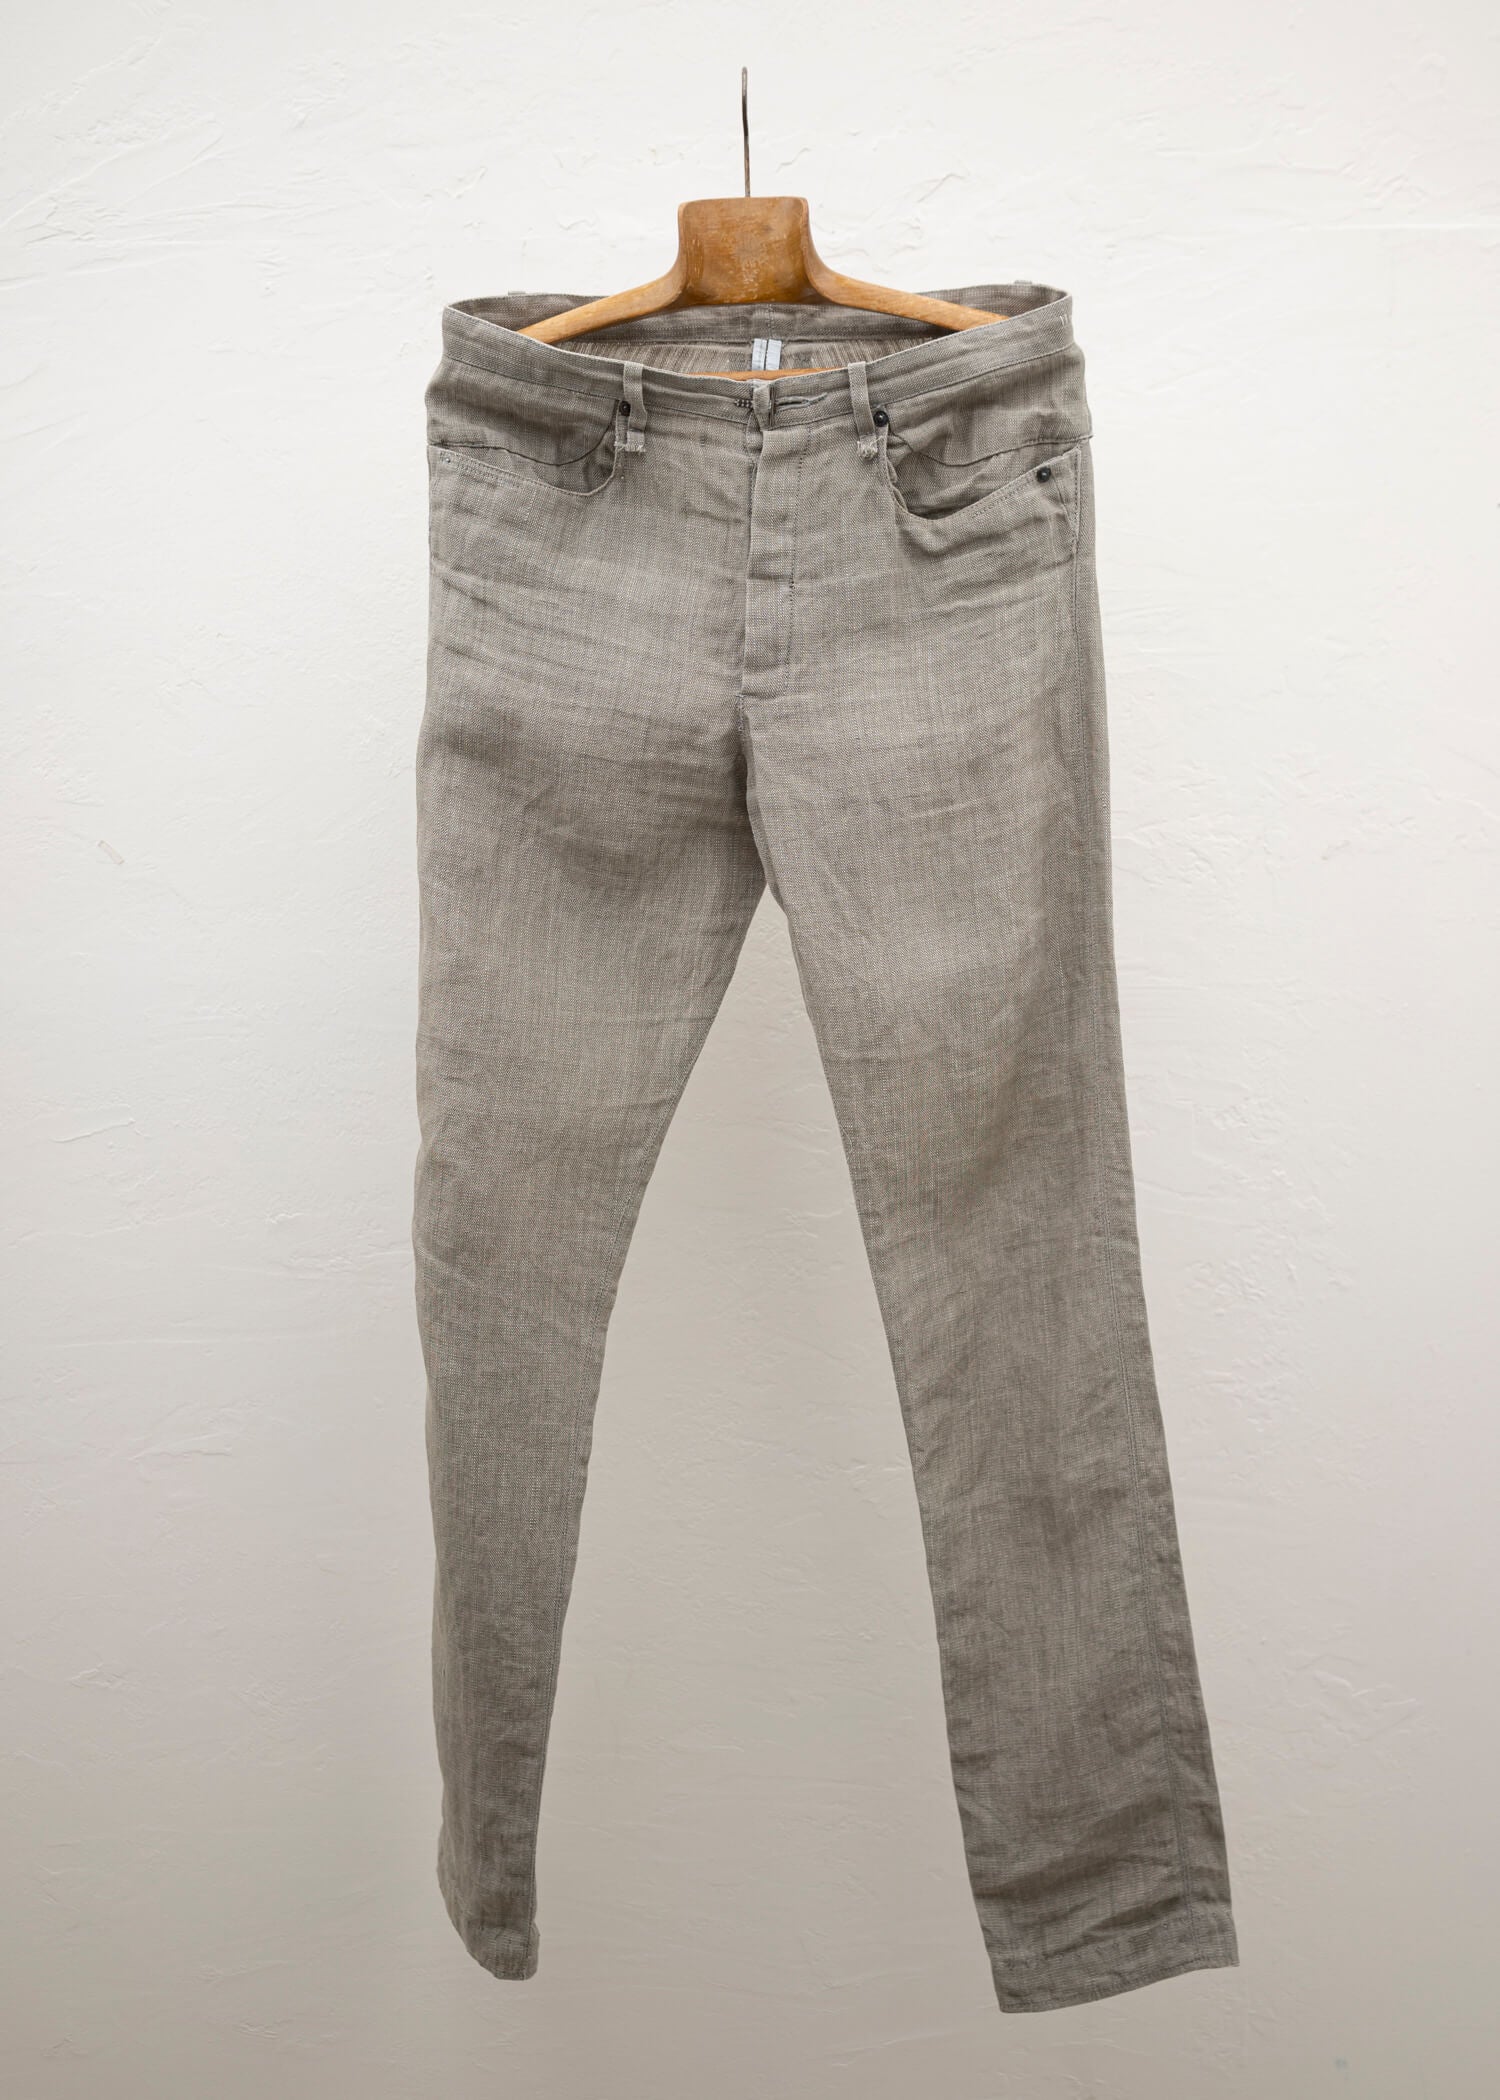 taichi murakami Jeans ラミーパンツ – ARCHIVE OF FASHION